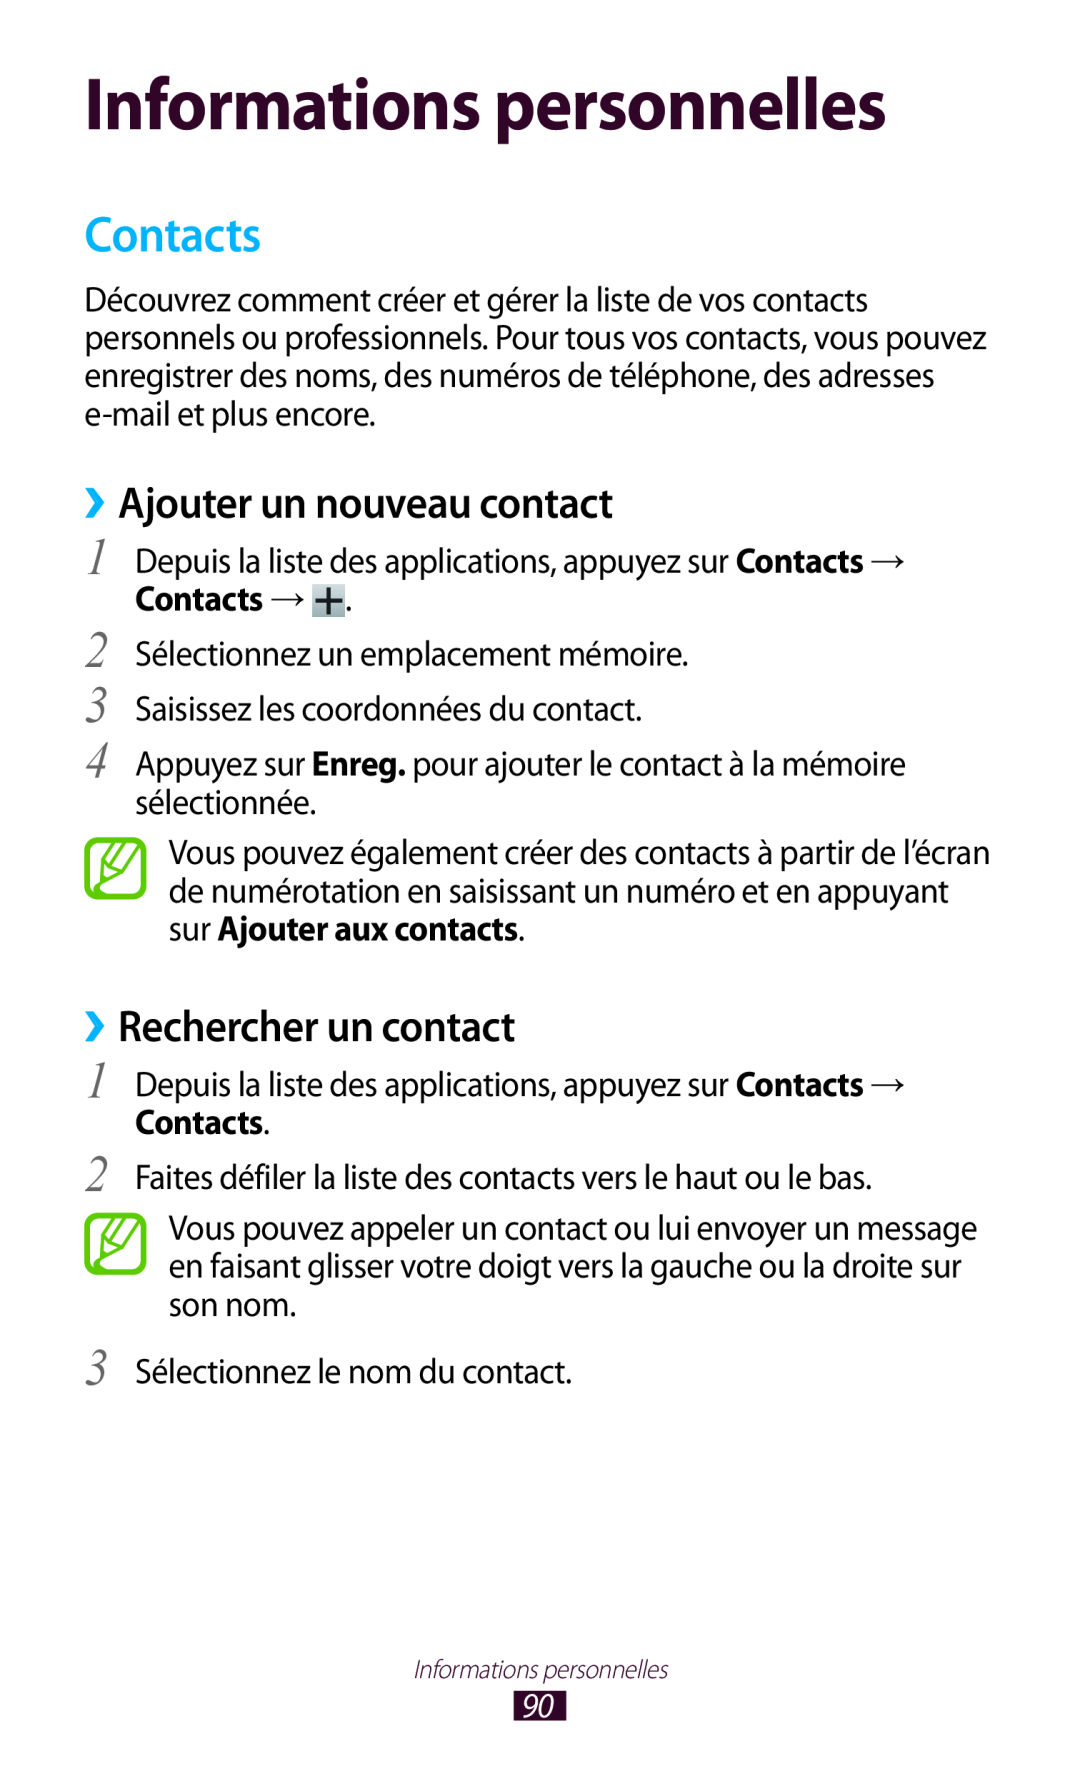 Samsung GT-I9305OKDFTM manual Informations personnelles, Contacts, ››Ajouter un nouveau contact, ››Rechercher un contact 